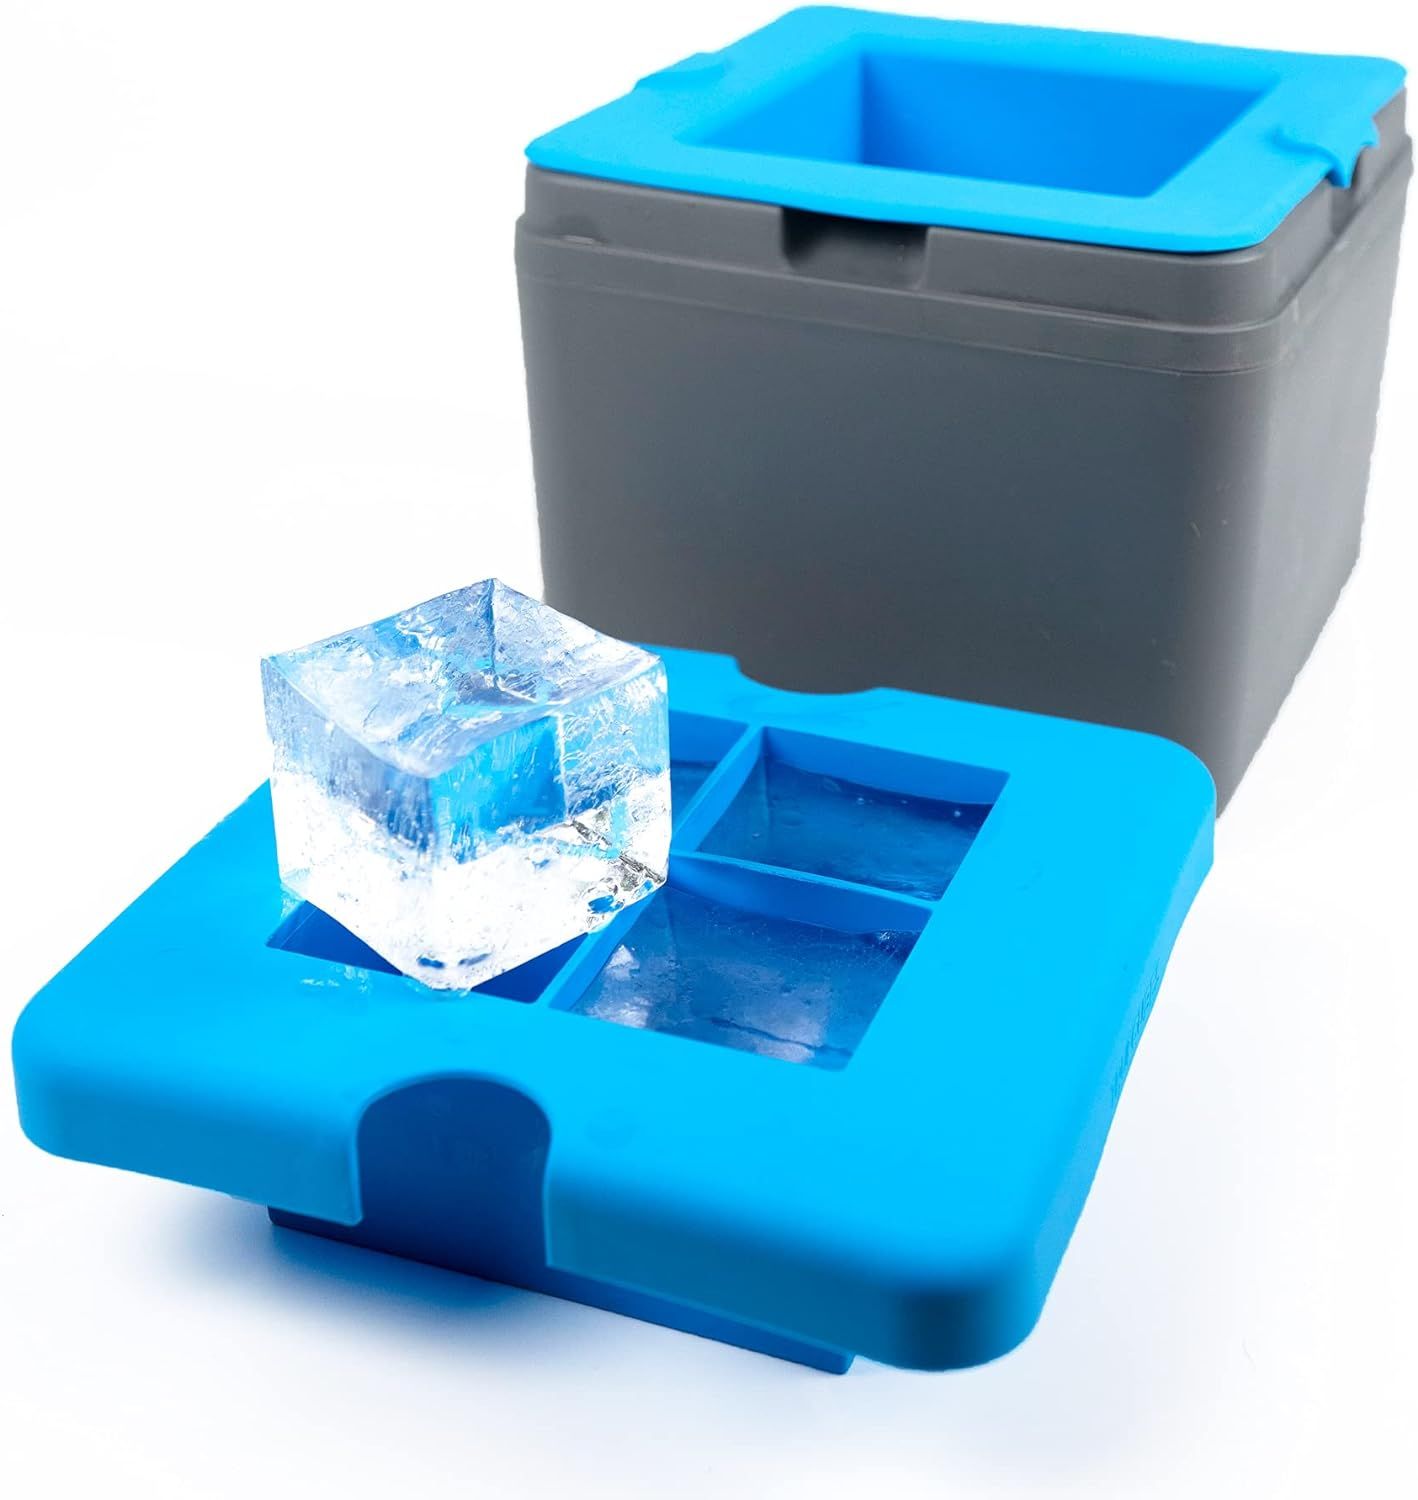 True Cubes Clear Ice Cube Tray: 4-cube tray | Amazon (US)